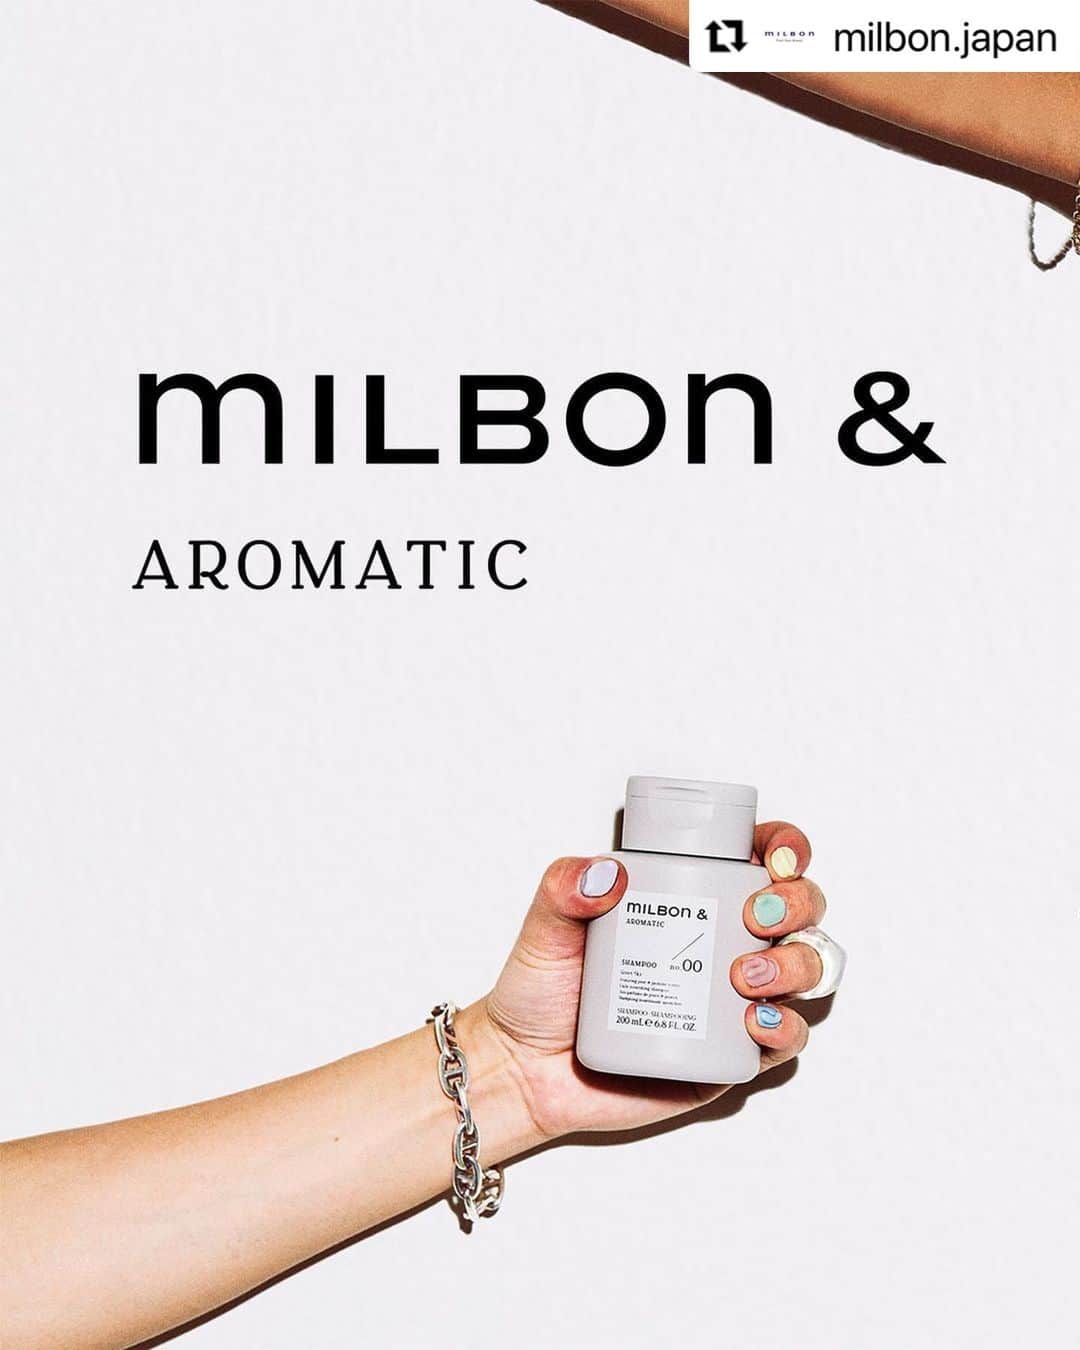 "milbon"（ミルボン）のインスタグラム：「#Repost @milbon.japan ・・・ ＼使ってみたい色の💙でコメントしてね／ 「香り」で選ぶヘアケアmilbon &（ミルボン アンド）登場✨  milbon &（ミルボン アンド）は、自分らしく自由に好きな香りを組み合わせる新しいヘアケアブランド。 翌日までやさしく続くアロマラスティング処方により、心地よく華やぐ香りが髪からほのかに持続します。 トリートメントとアウトバストリートメント、それぞれ5種類の香りから組み合わせてお楽しみください💐 👉詳細は画像をスワイプしてチェック！  ■ミルボン アンド シャンプー no.00 200mL / 2,420円（税込）  ■ミルボン アンド トリートメント 全5種 no.01 / no.02 / no.03 / no.04 / no.05 200g / 2,420円（税込）  ■ミルボン アンド オイル 全5種 no.01 / no.02 / no.03 / no.04 / no.05 60mL / 2,420円（税込）  お求めは、"milbon"お取り扱いサロン様にて。  【“milbon“ AROMATIC】will finally be launched in Japan in April 2023, ahead of the world!  You’ve got the rich repairing ingredients,and can choose from 5 different scents to suit your mood🫧🛁  #ミルボン #milbon #ミルボンアンド #ミルボンアンドアロマティック #milbonandaromatic #美容師おすすめ #シャンプー #ヘアオイル　#トリートメント　#グローバルミルボン　#プレミアムポジション #ヘアケア #ヘアケアアイテム #サロン専売品 #アウトバストリートメント」